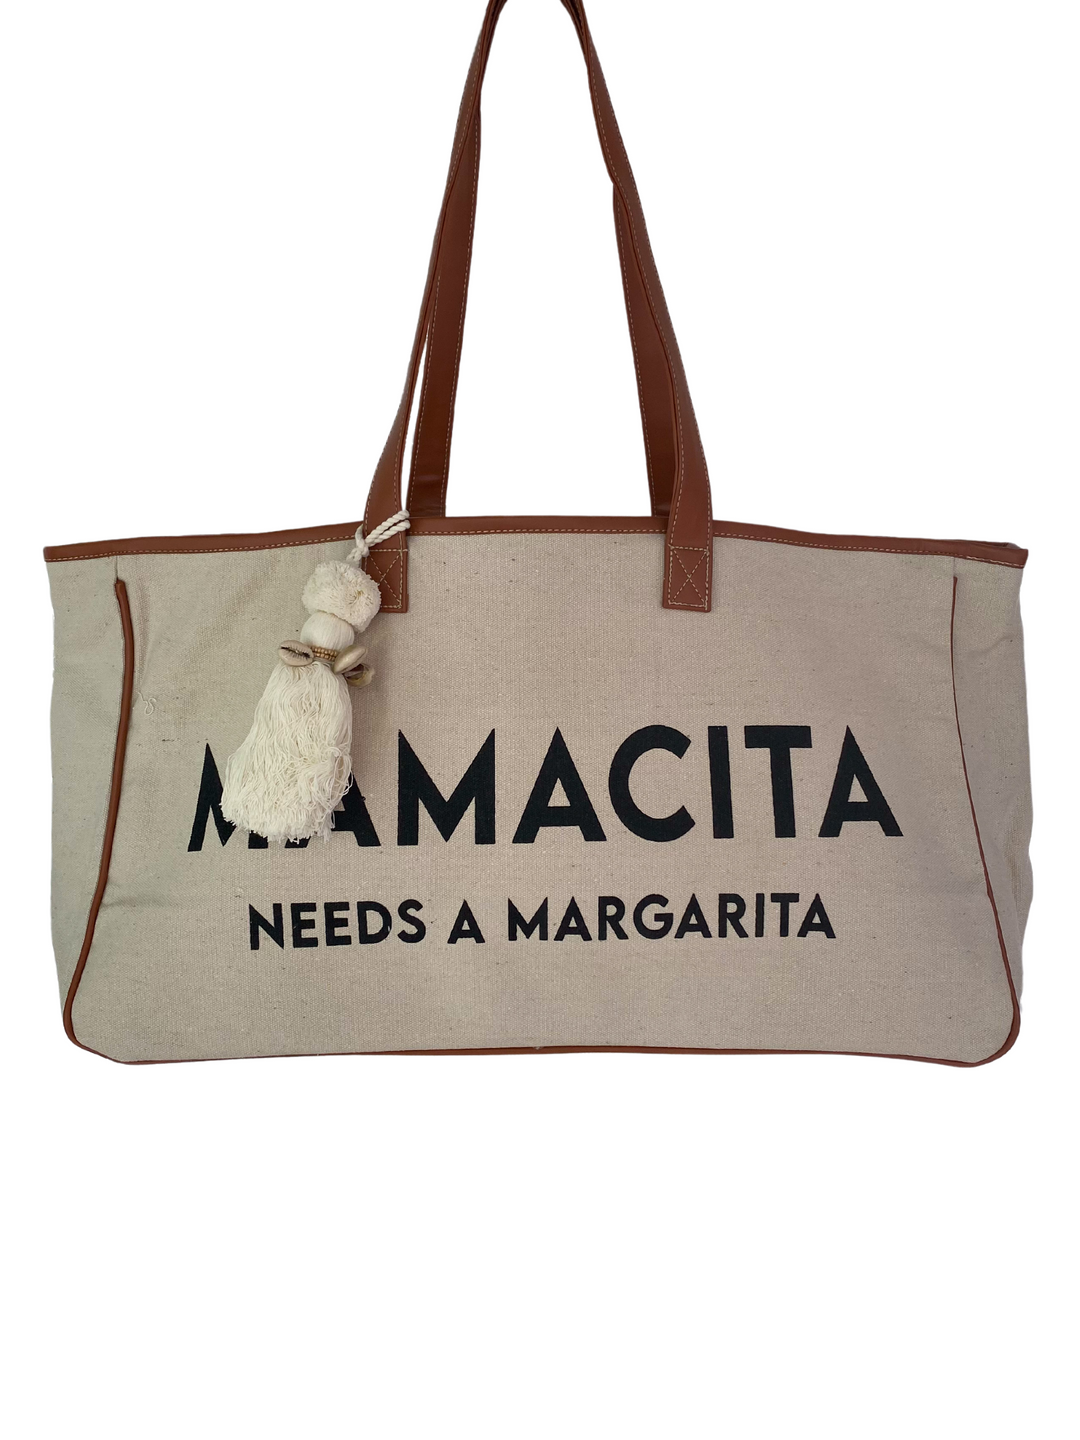 Mamacita Tote Bag